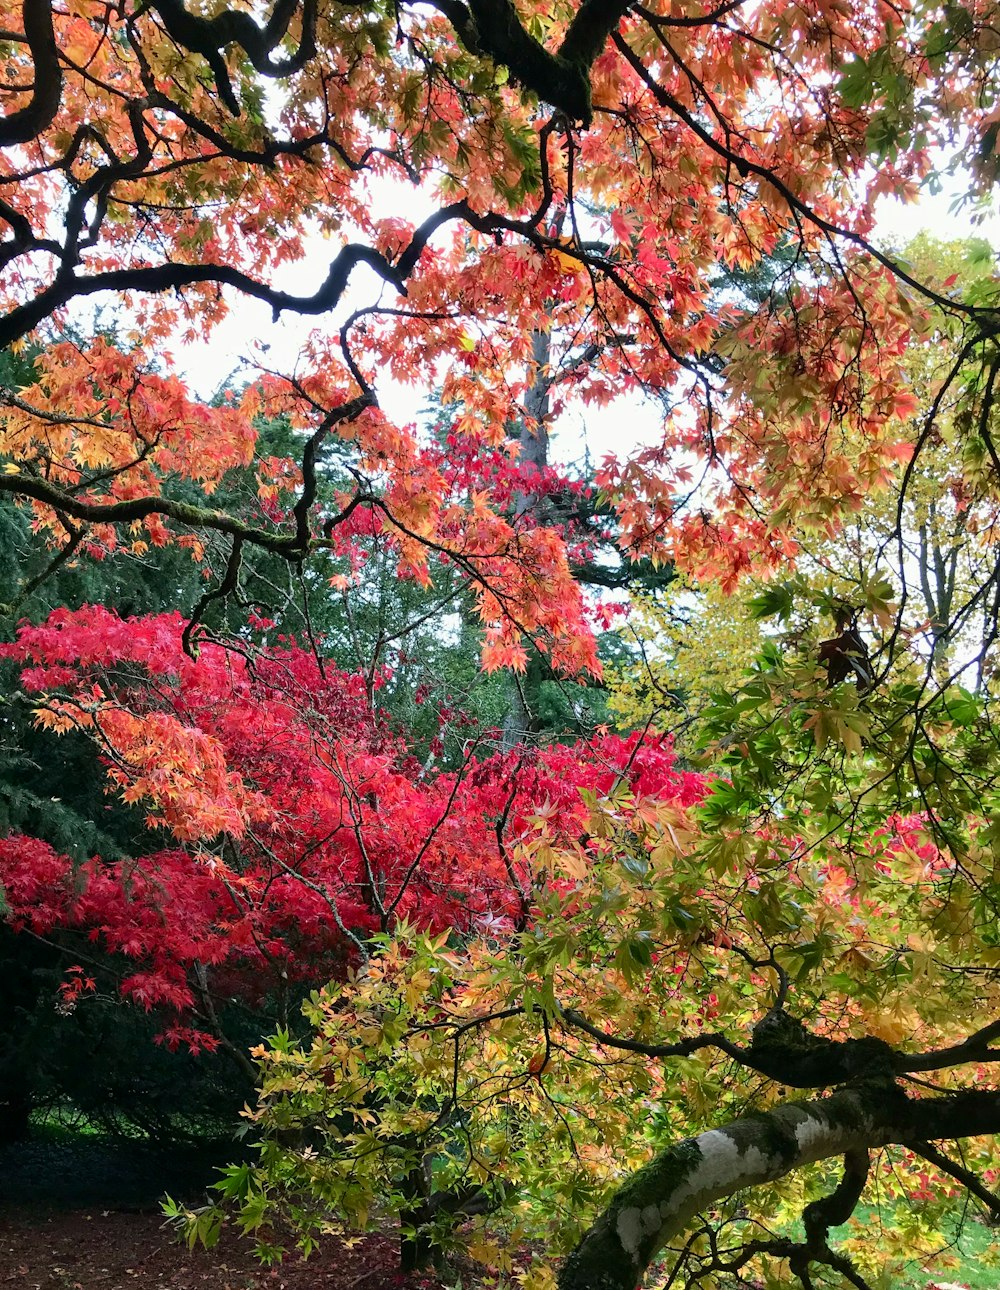 나뭇잎이 가득한 나무 아래 앉아있는 공원 벤치